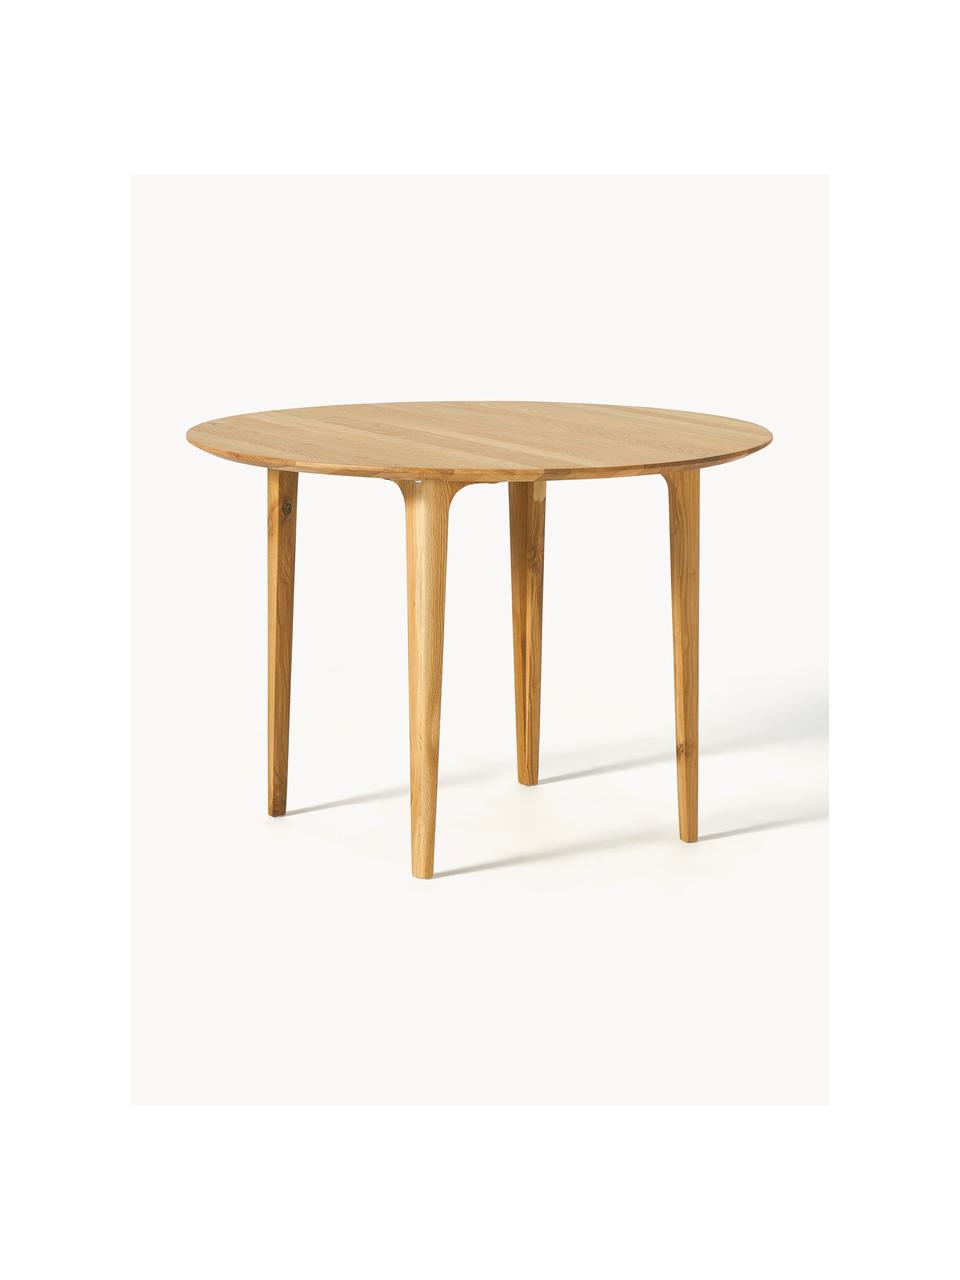 Kulatý jídelní stůl z masivního dubového dřeva Archie, Ø 110 cm, Masivní dubové dřevo, olejované

Tento produkt je vyroben z udržitelných zdrojů dřeva s certifikací FSC®., Olejované dubové dřevo, Ø 110 cm